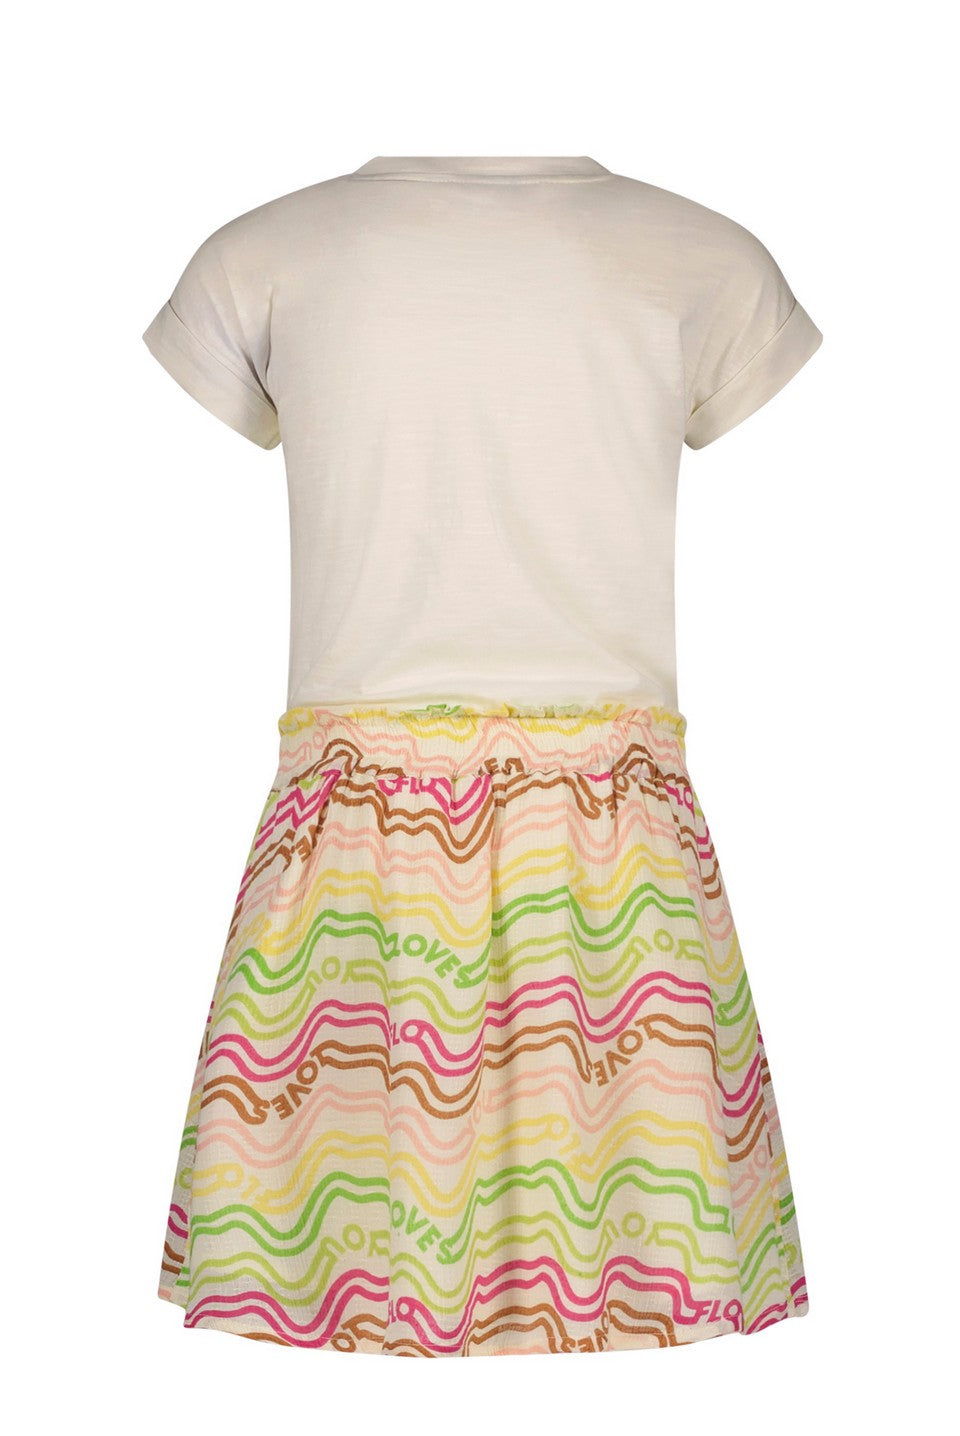 Meisjes Fancy Woven Rainbow Ss Dress With Jersey Top van Like Flo in de kleur Rainbow in maat 140.